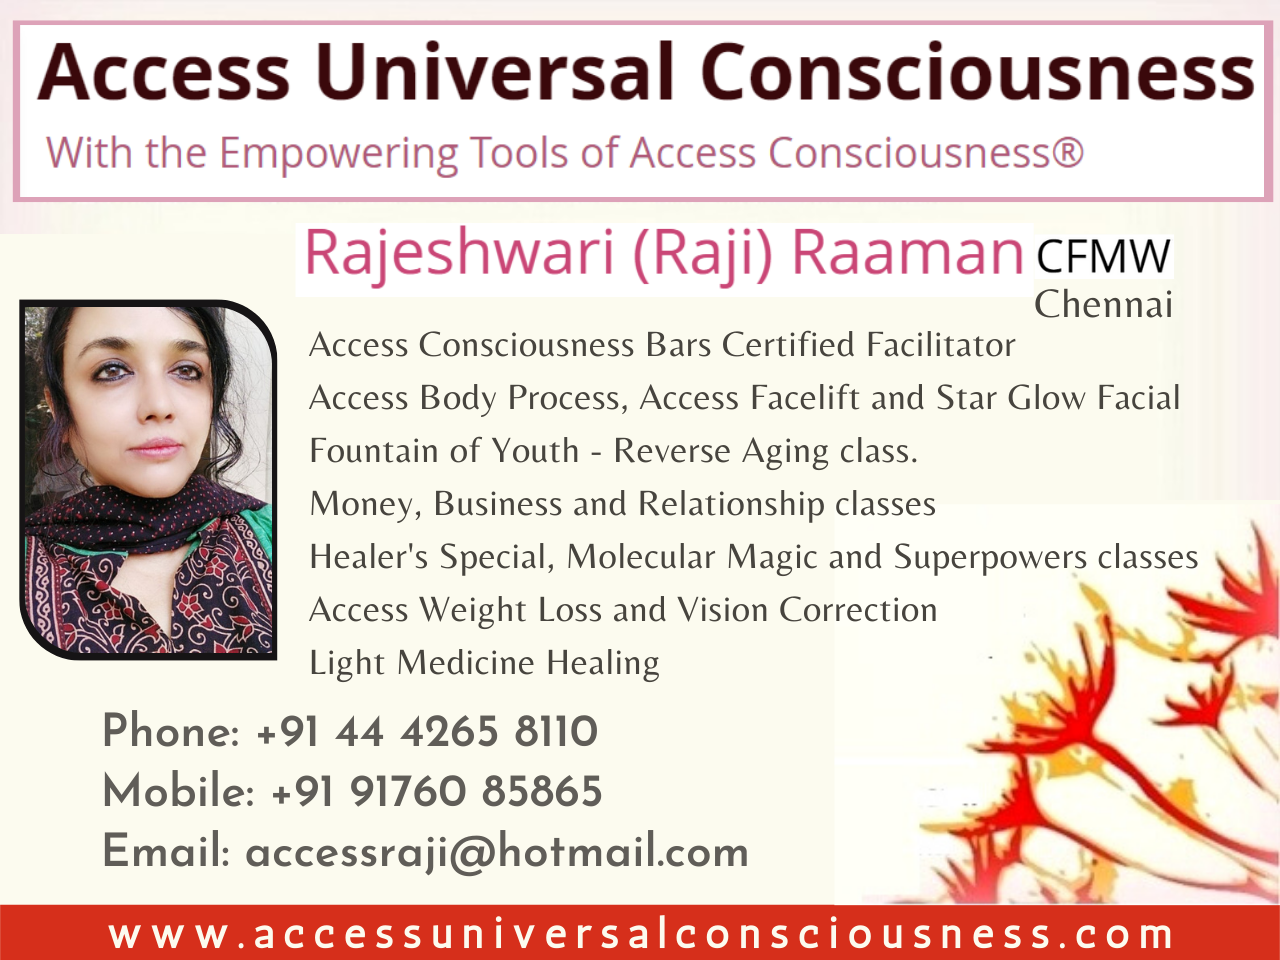 Raji Raaman, Access Consciousness bars and body process Facilitator - Coimbatore